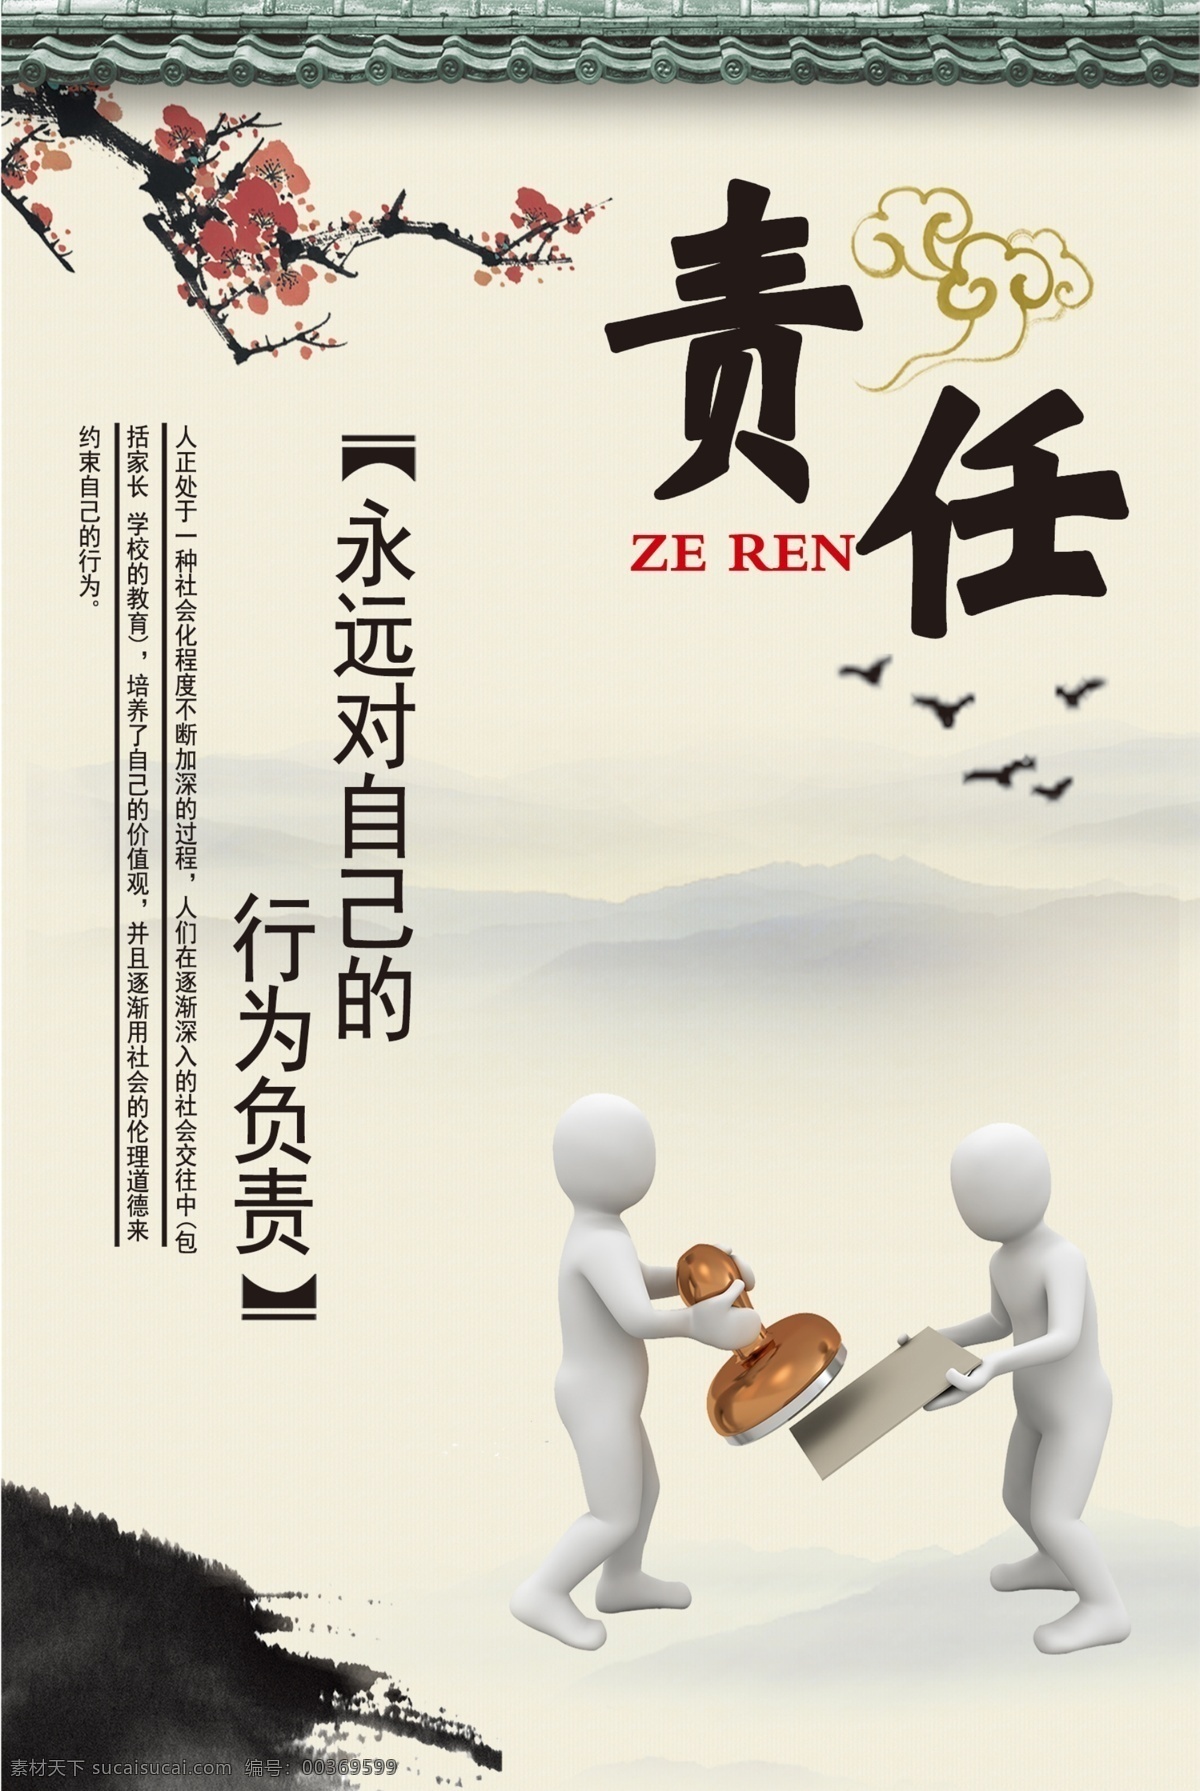 责任展板 责任 中国风 水墨 责任海报 企业文化 展板模板